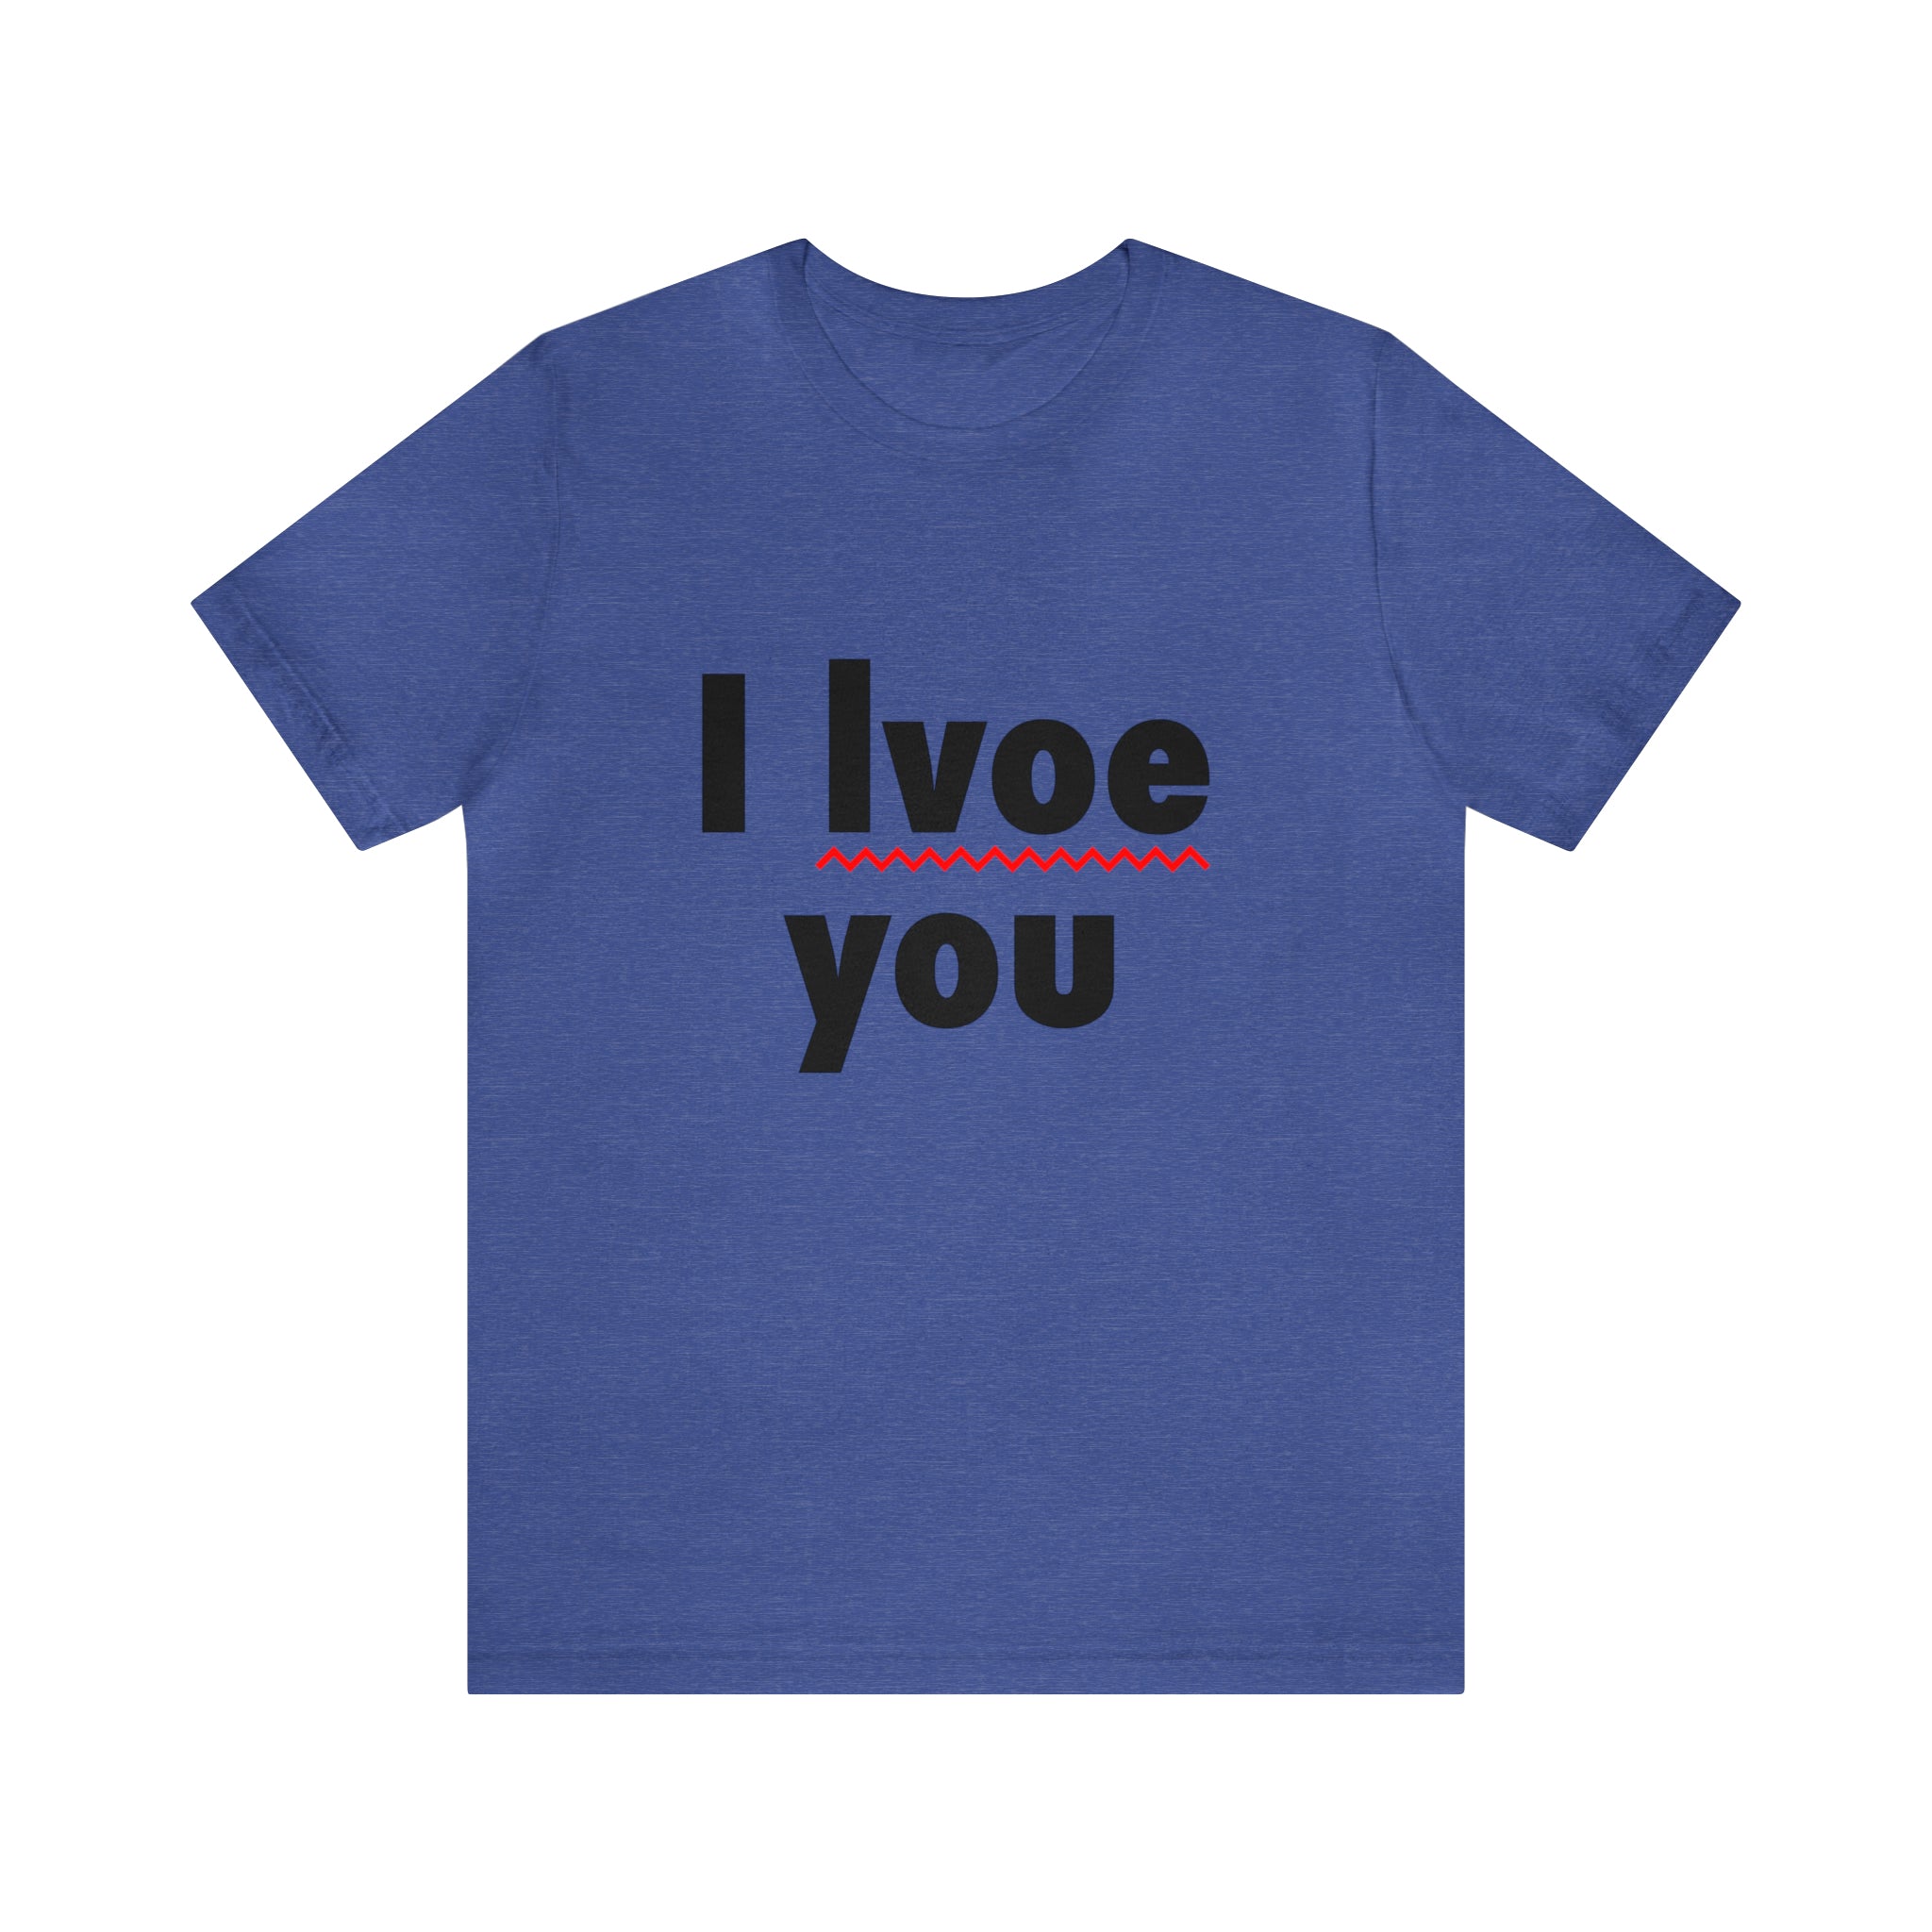 I Lvoe You T-Shirt